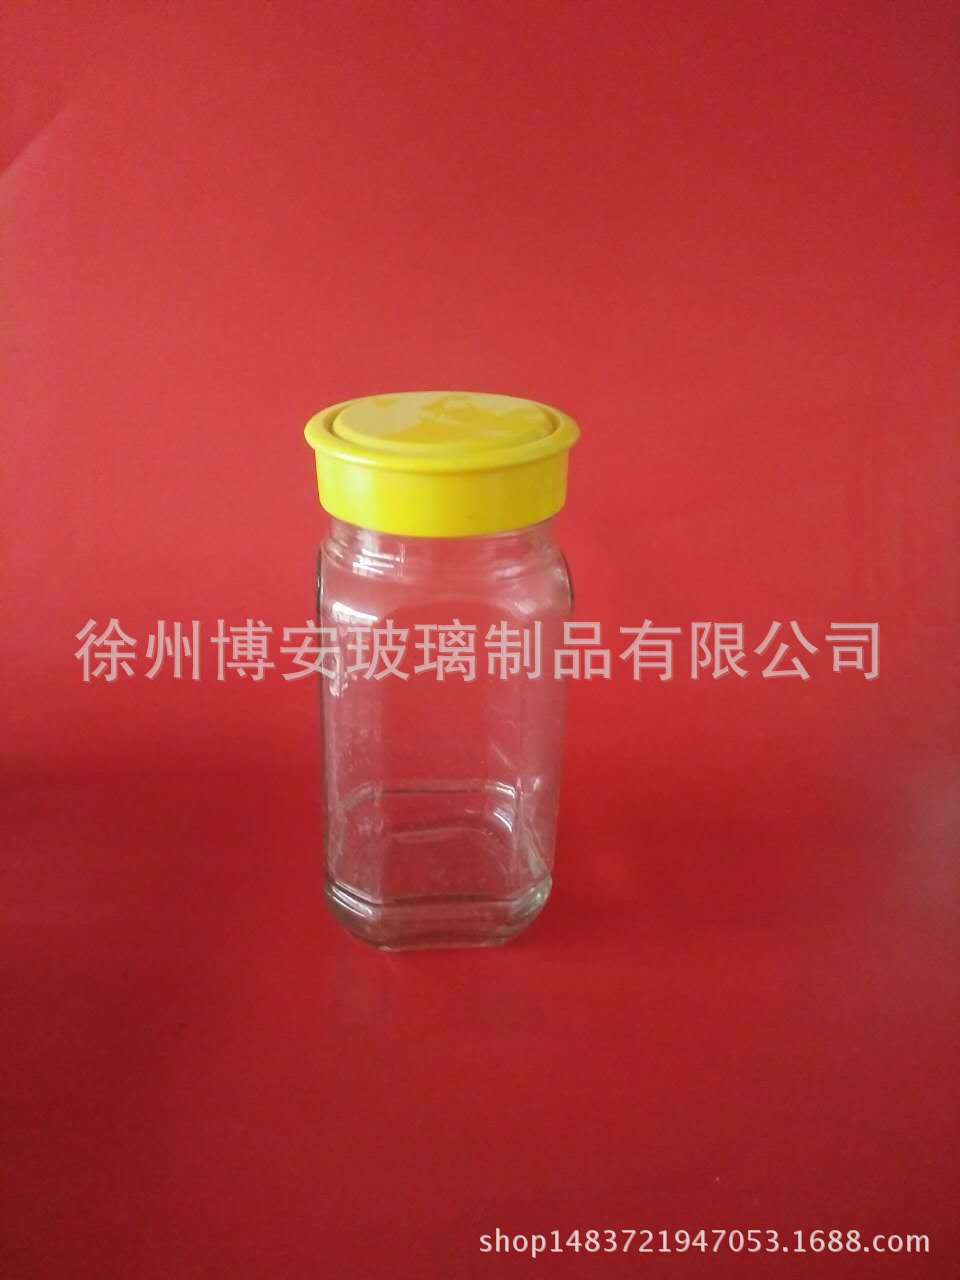 徐州市厂家直销玻璃瓶酱菜瓶蜂蜜瓶密封罐厂家